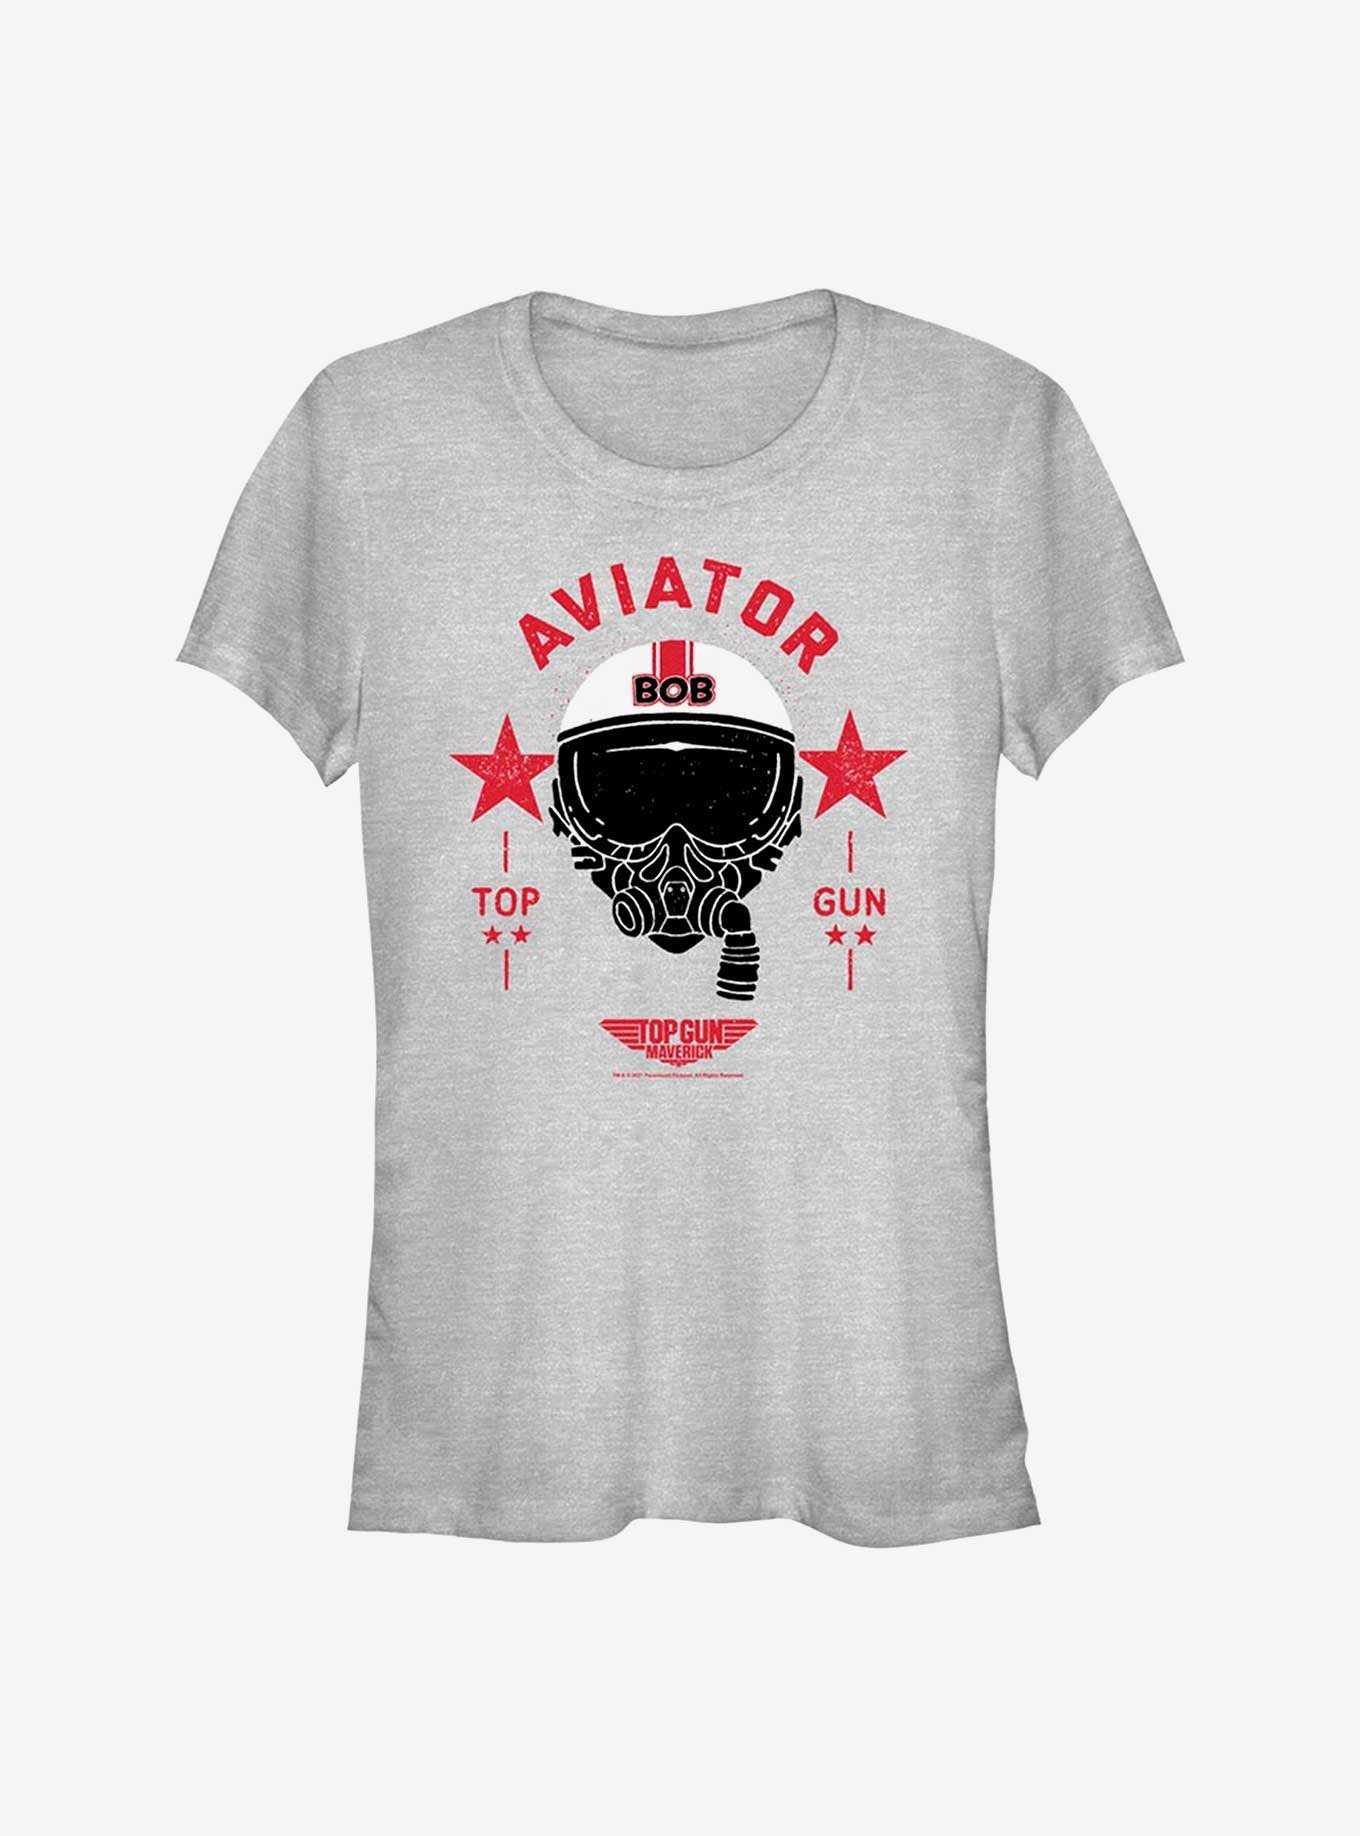 Top Gun Maverick Bob Aviator Girls T-Shirt, , hi-res